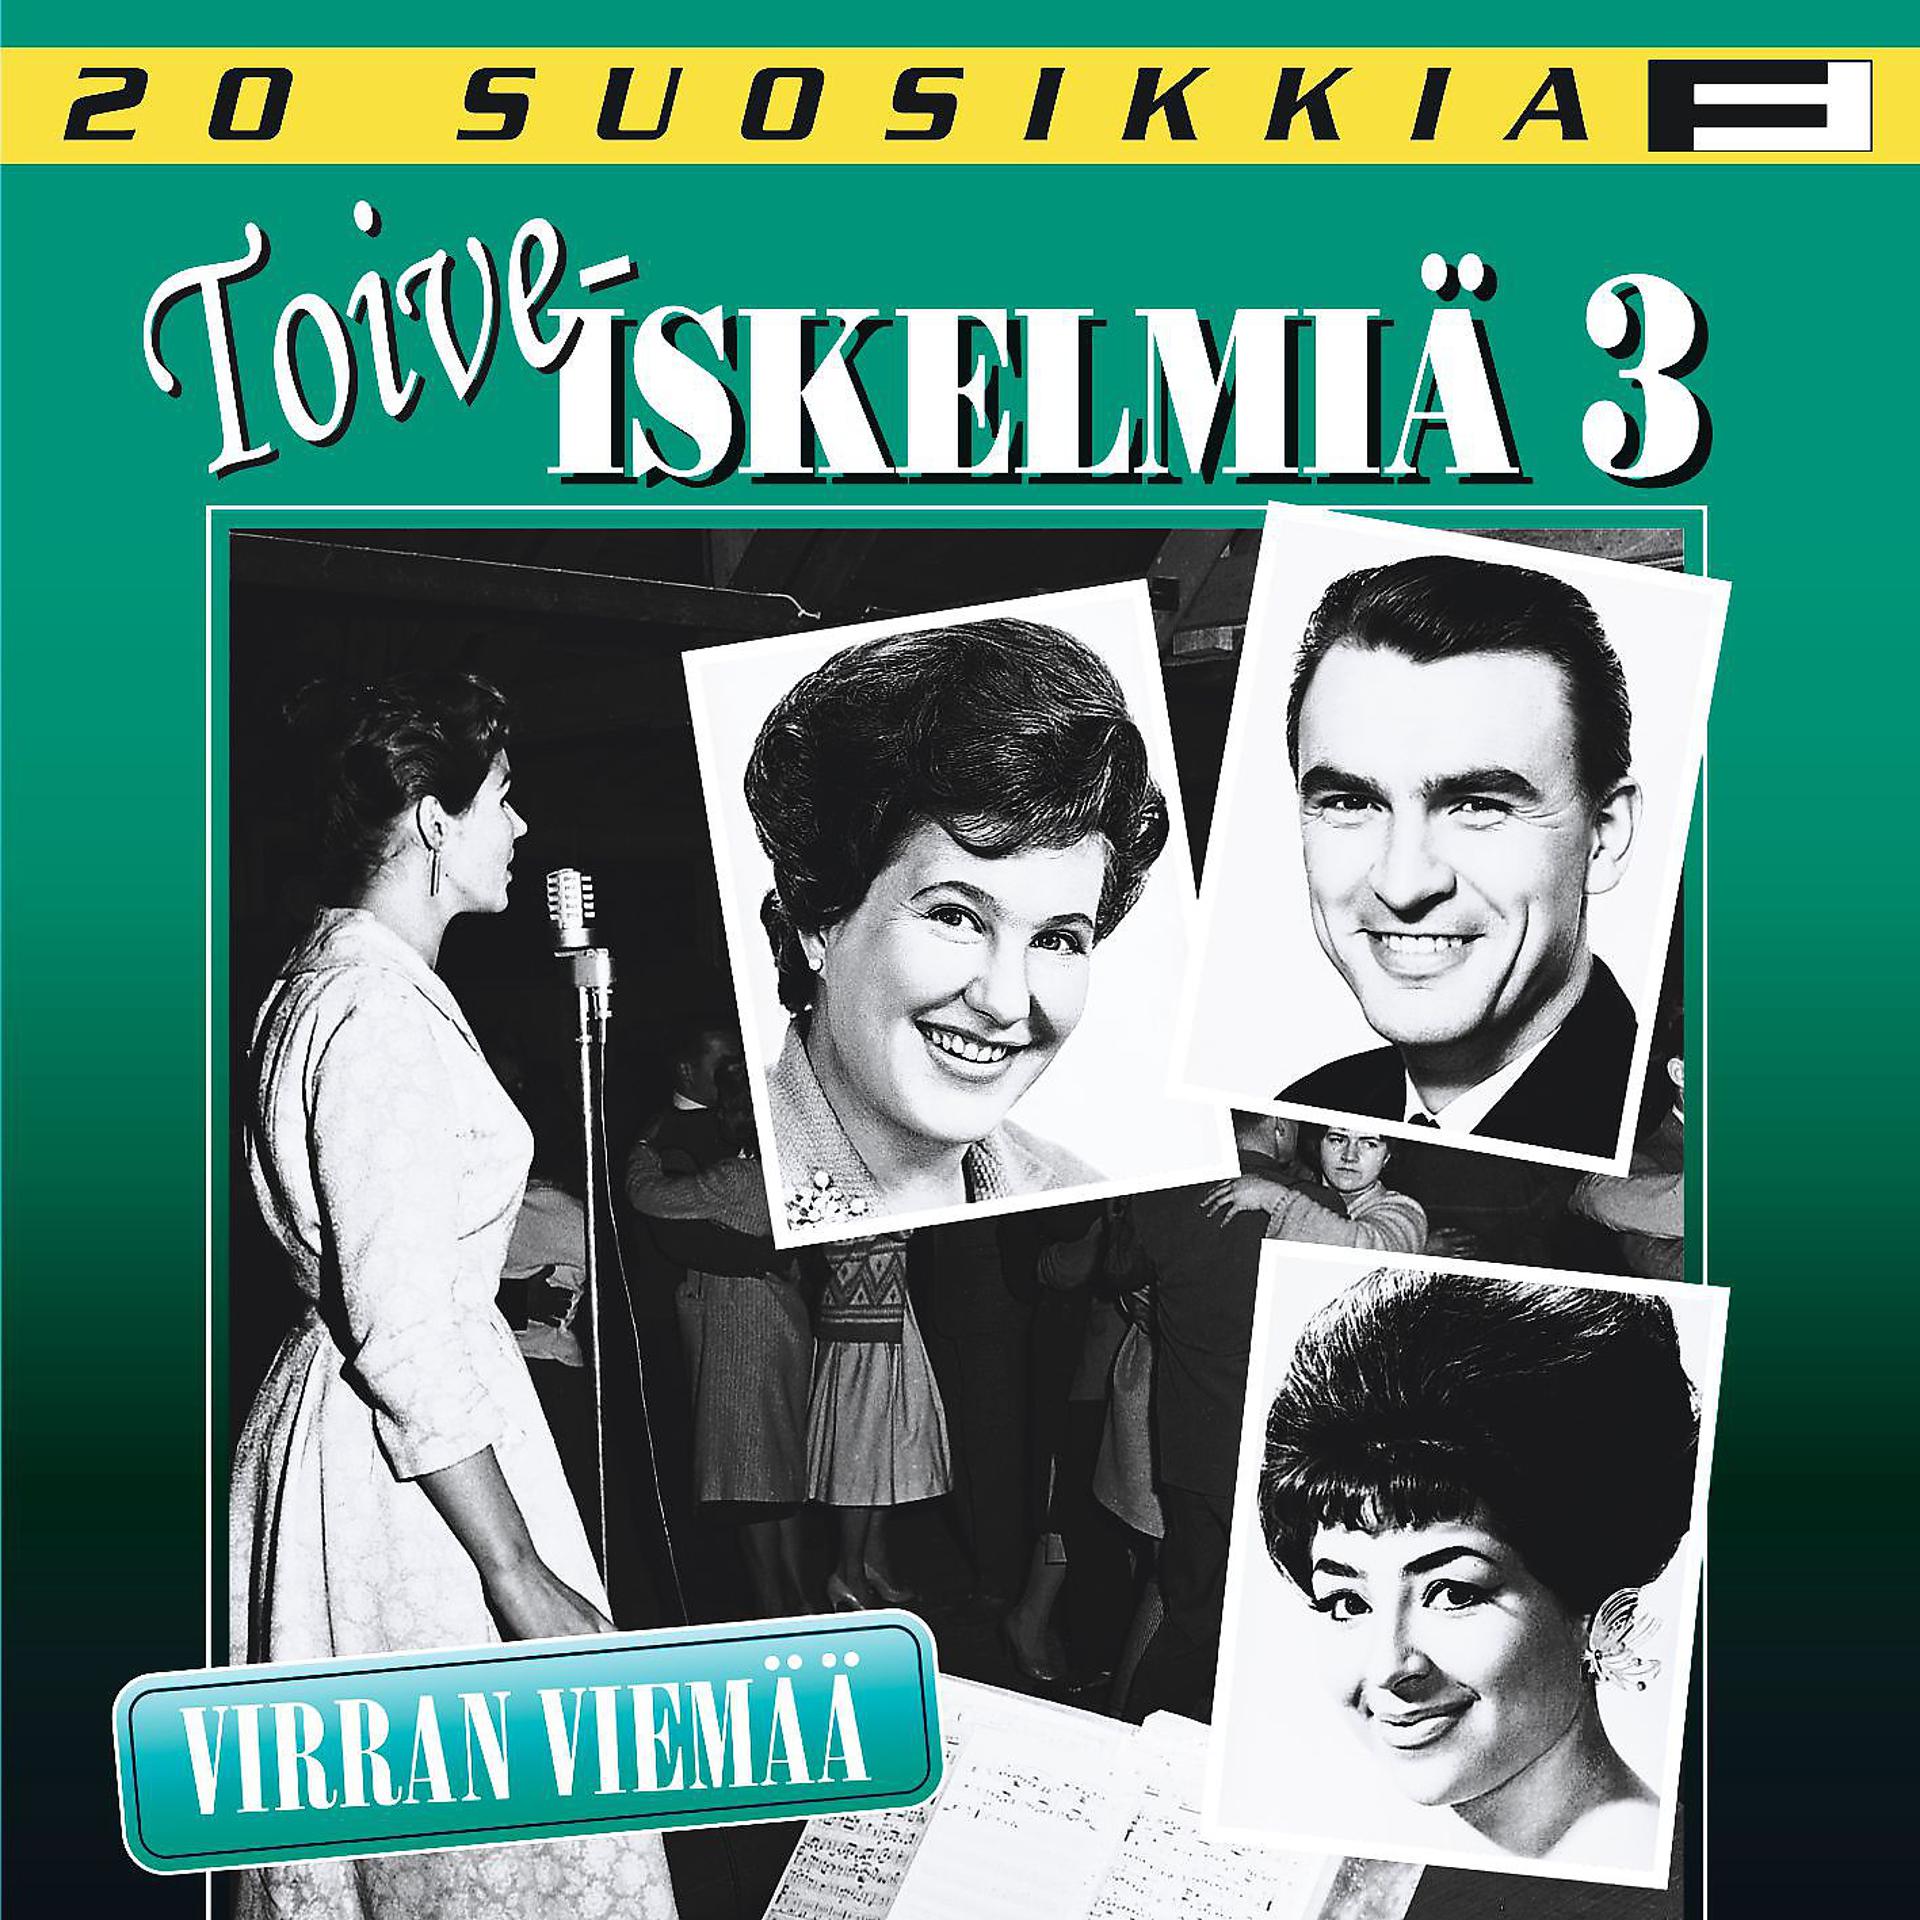 Постер альбома 20 Suosikkia / Toiveiskelmiä 3 / Virran viemää